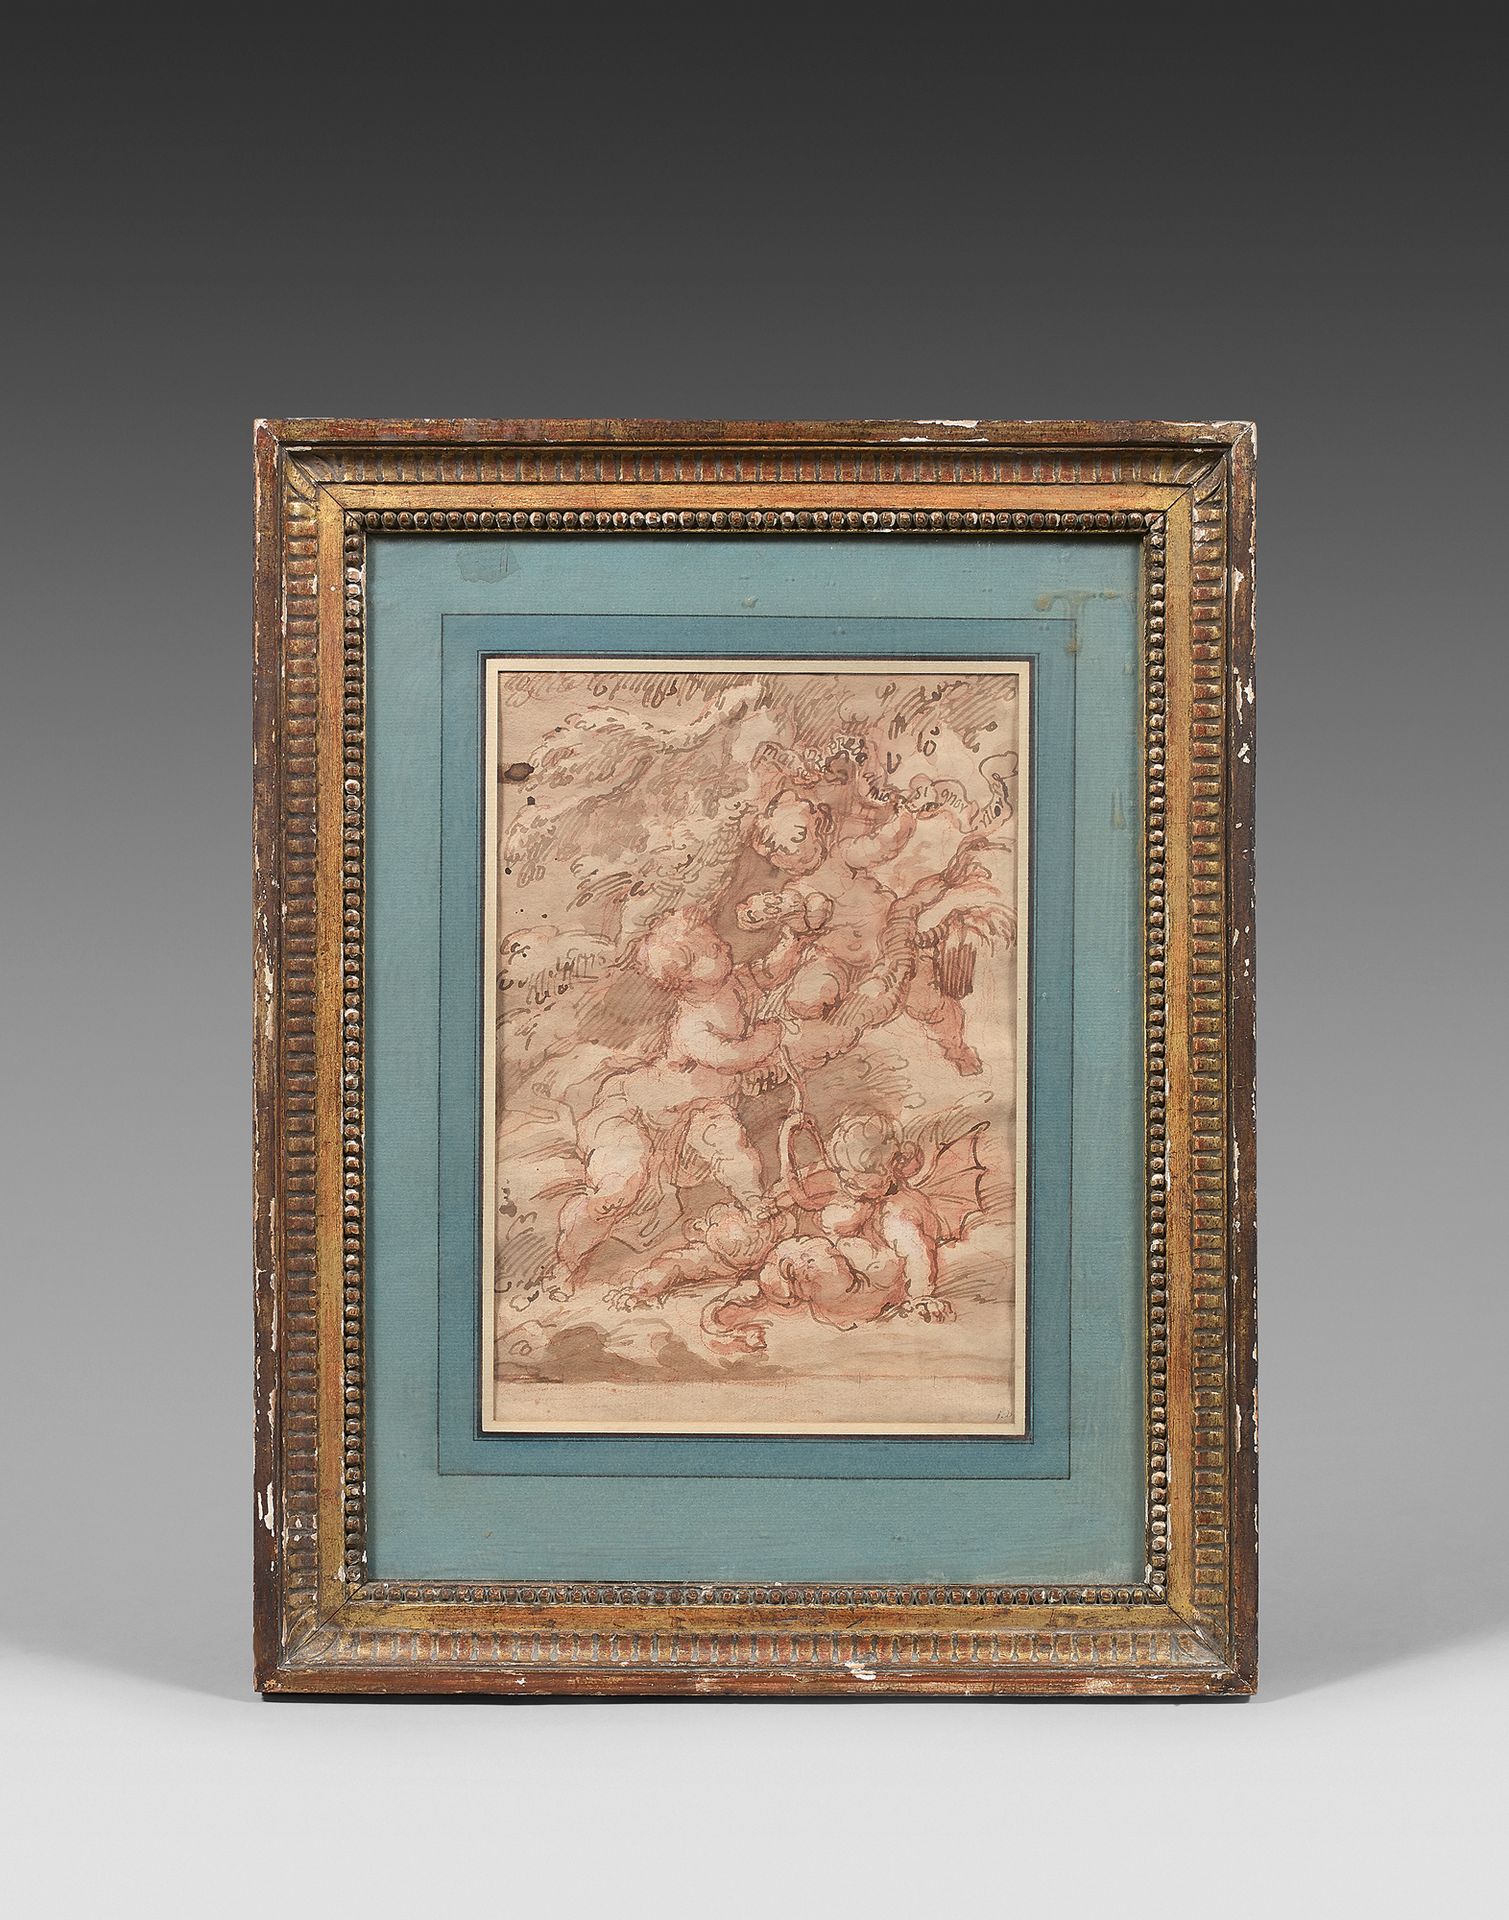 École ITALIENNE du XVIIIe siècle Putti
Lavis brun et sanguine.
27, 5 x 19 cm